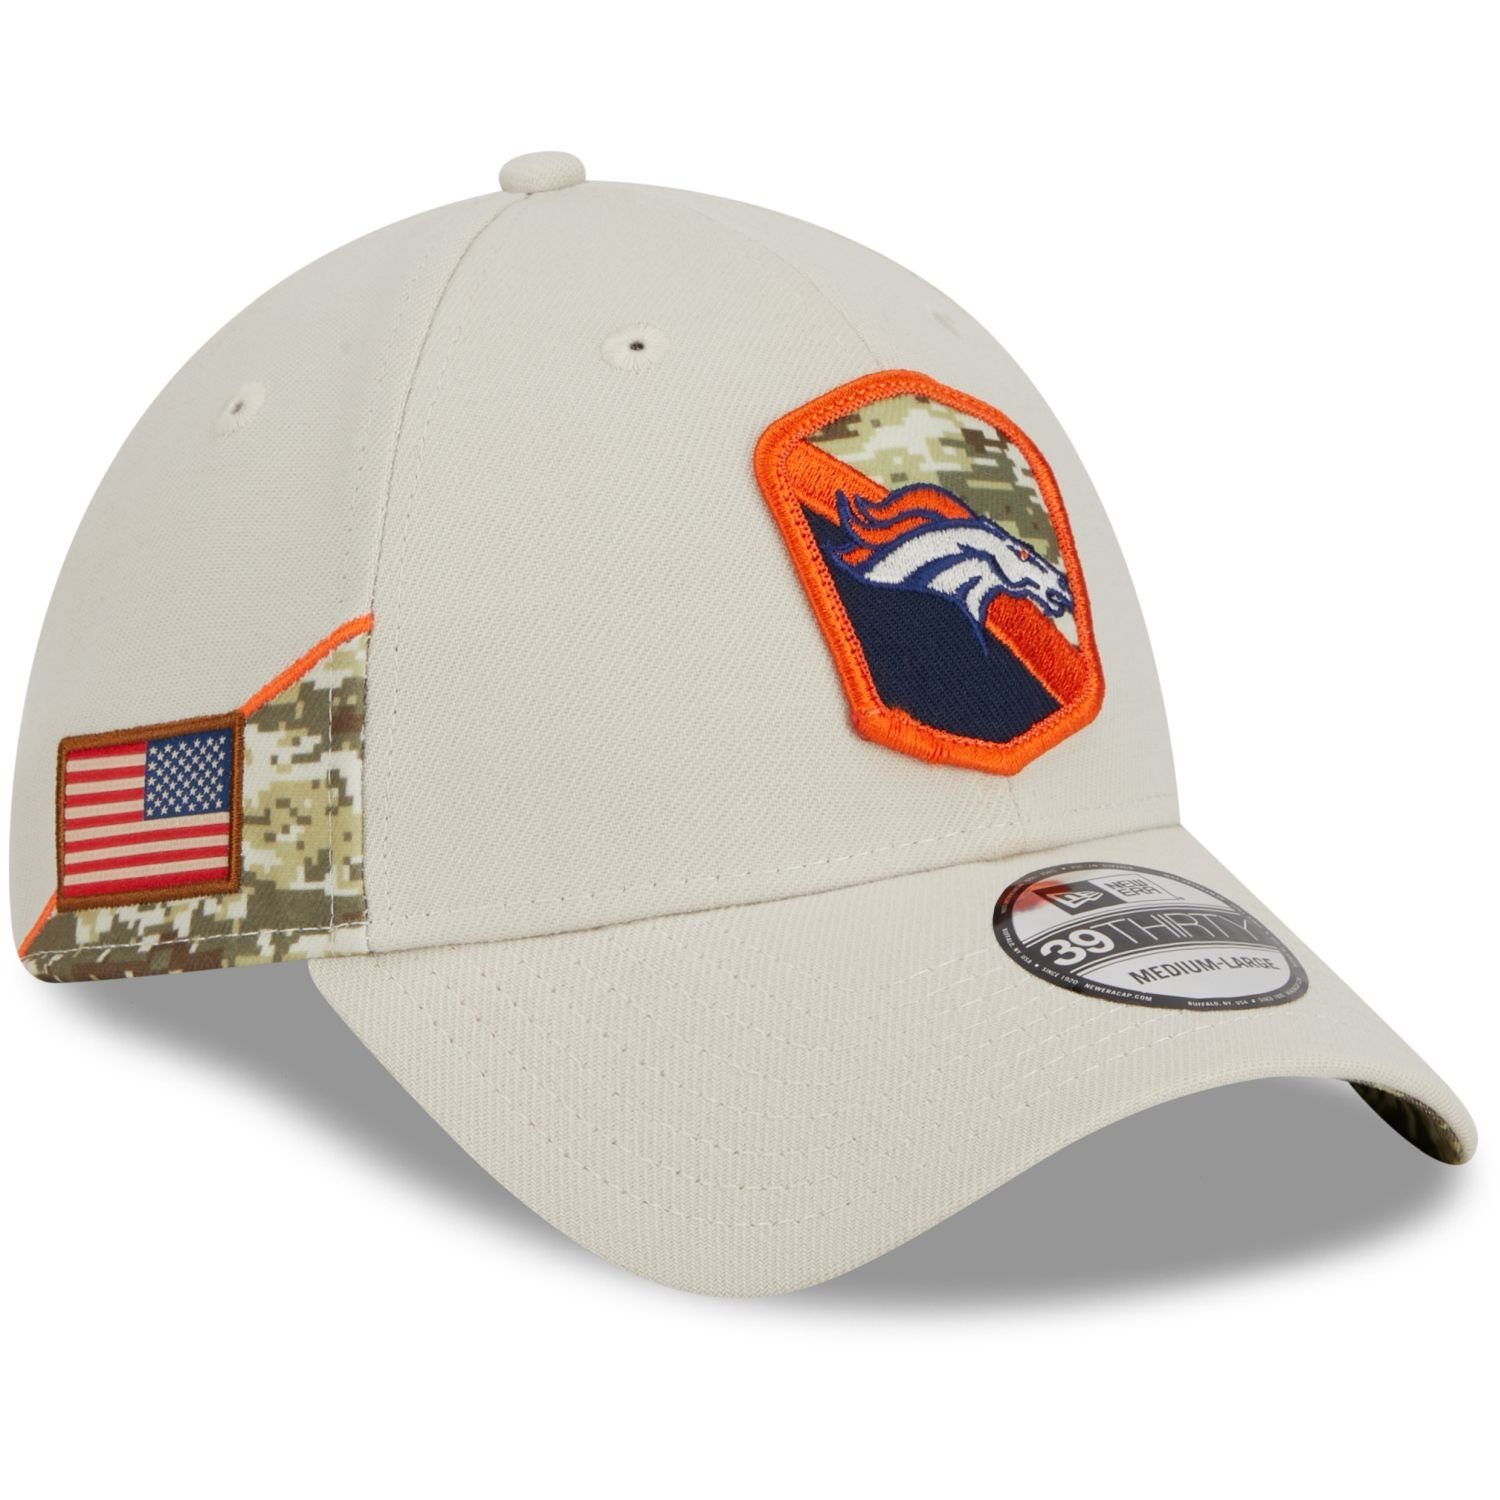 Cap to Flex Broncos Era Service NFL StretchFit Denver Salute New 39Thirty